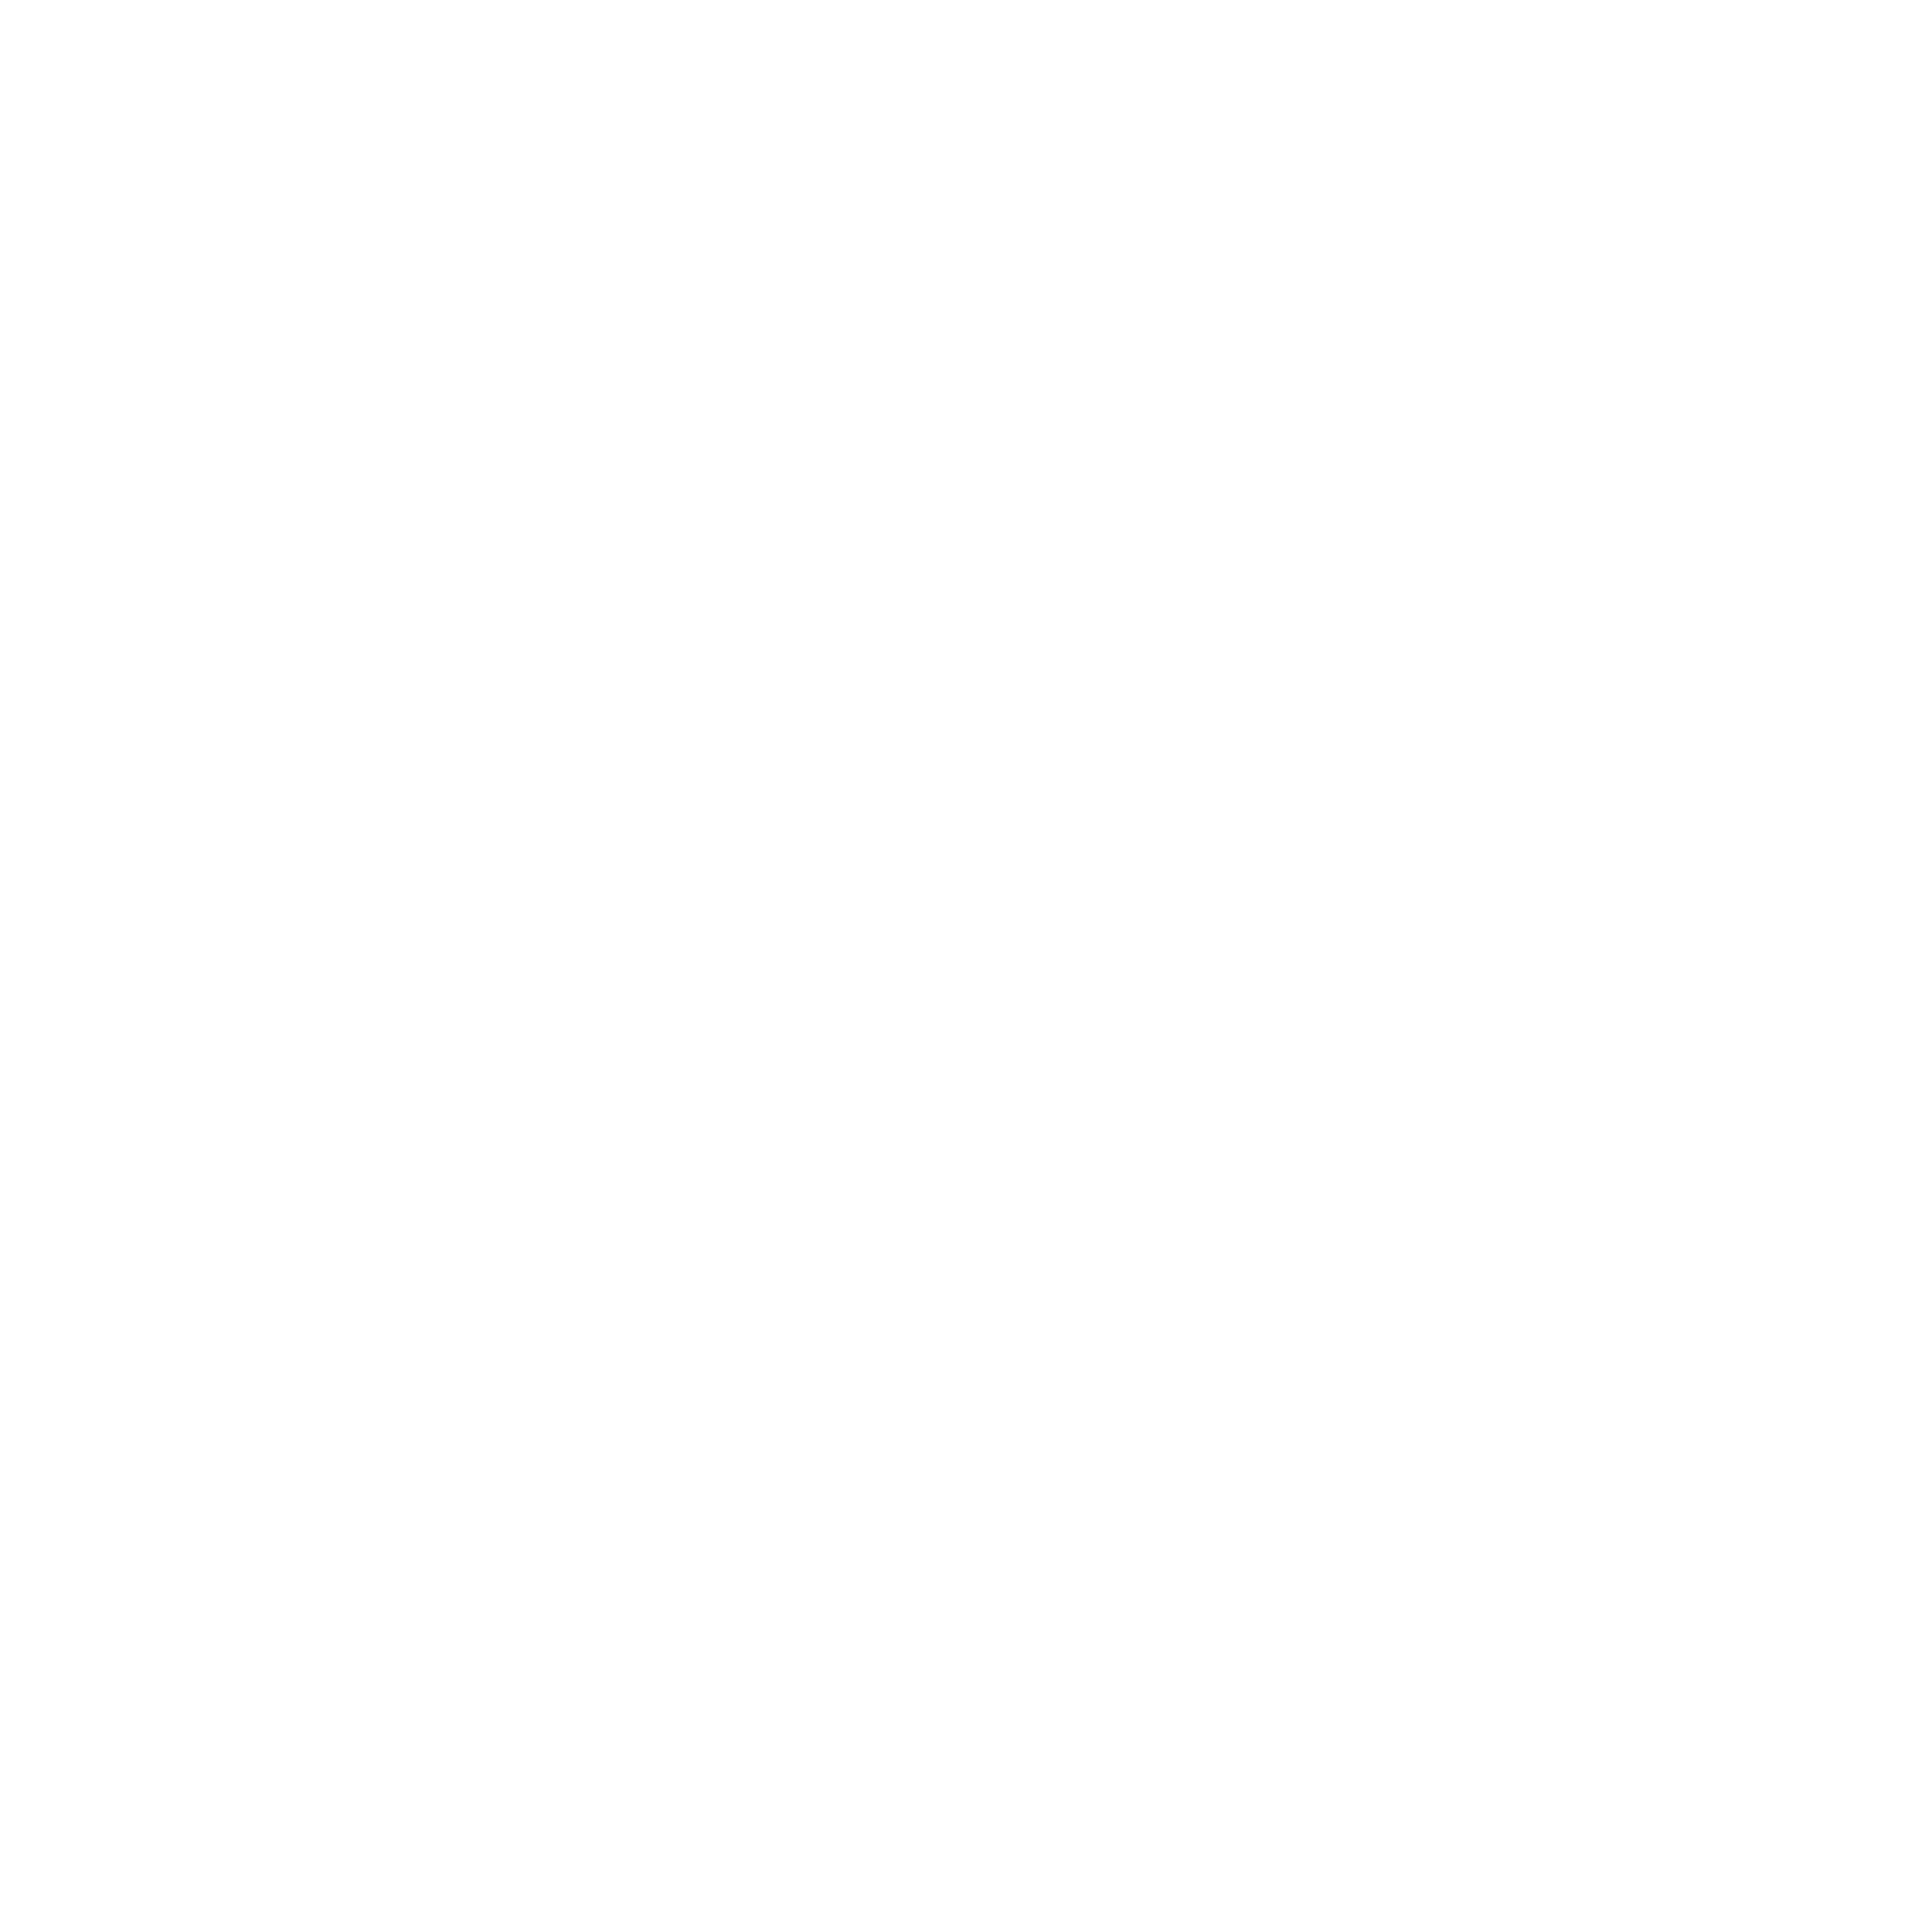 THS Logo